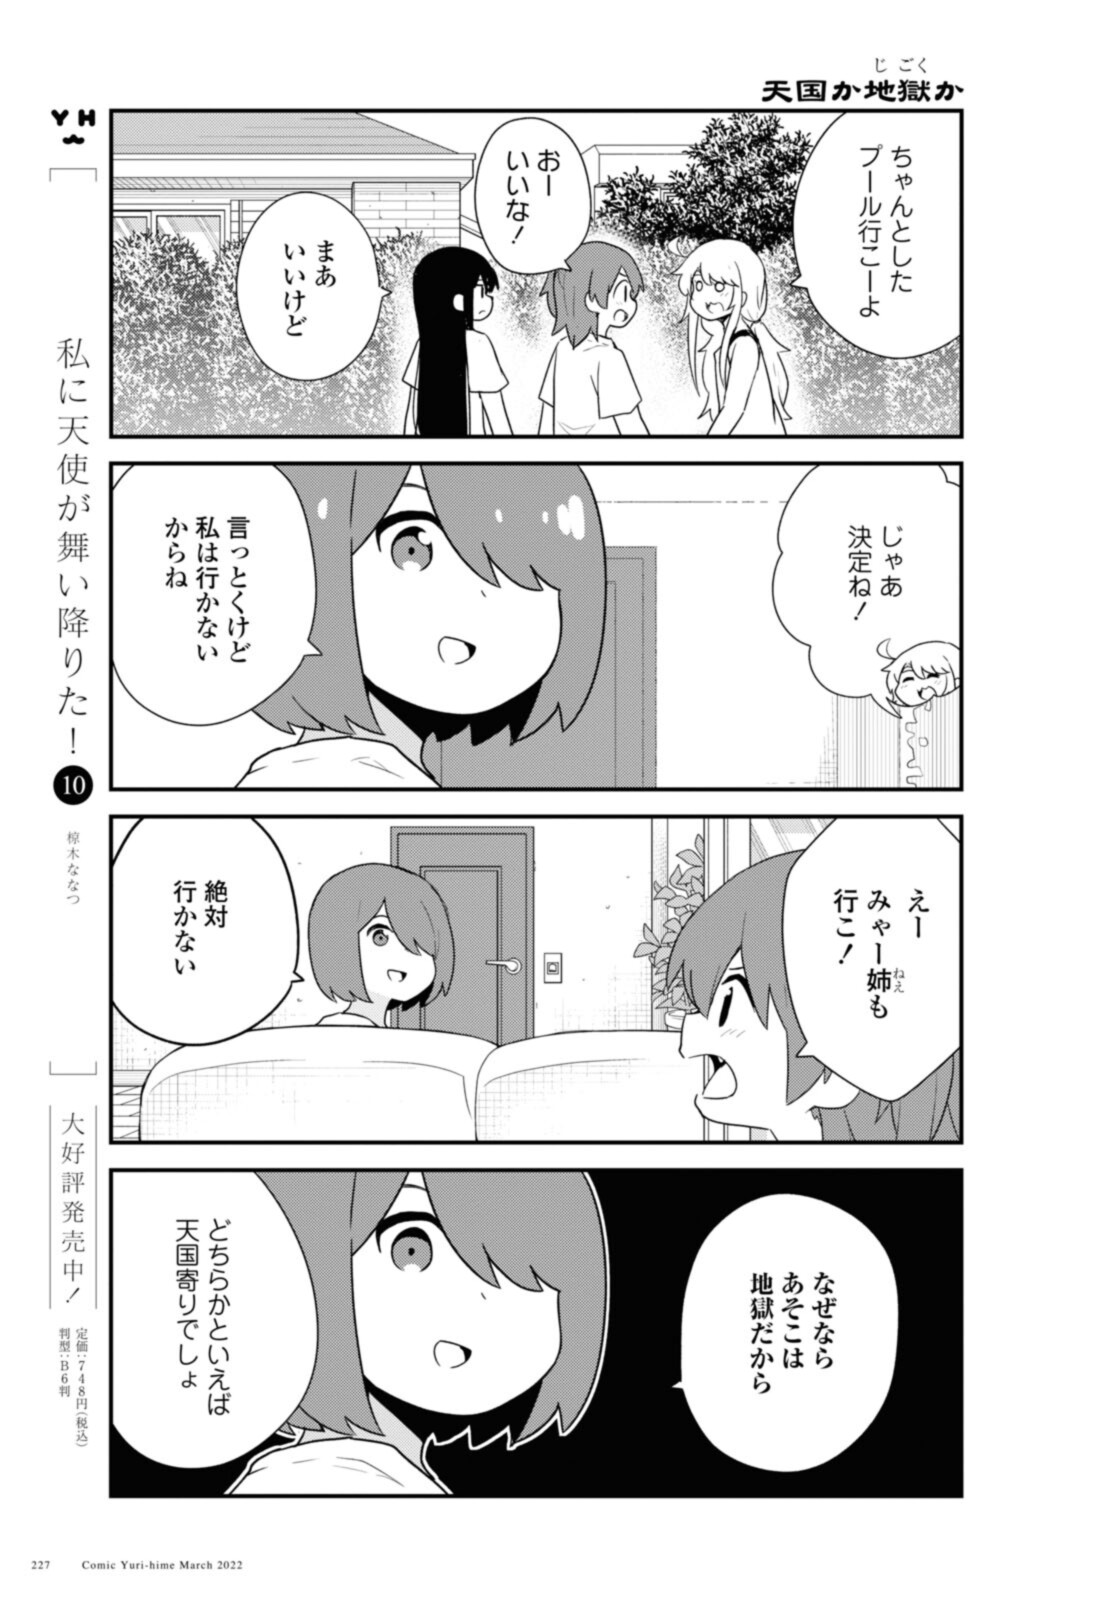 Watashi ni Tenshi ga Maiorita! - Chapter 93 - Page 3